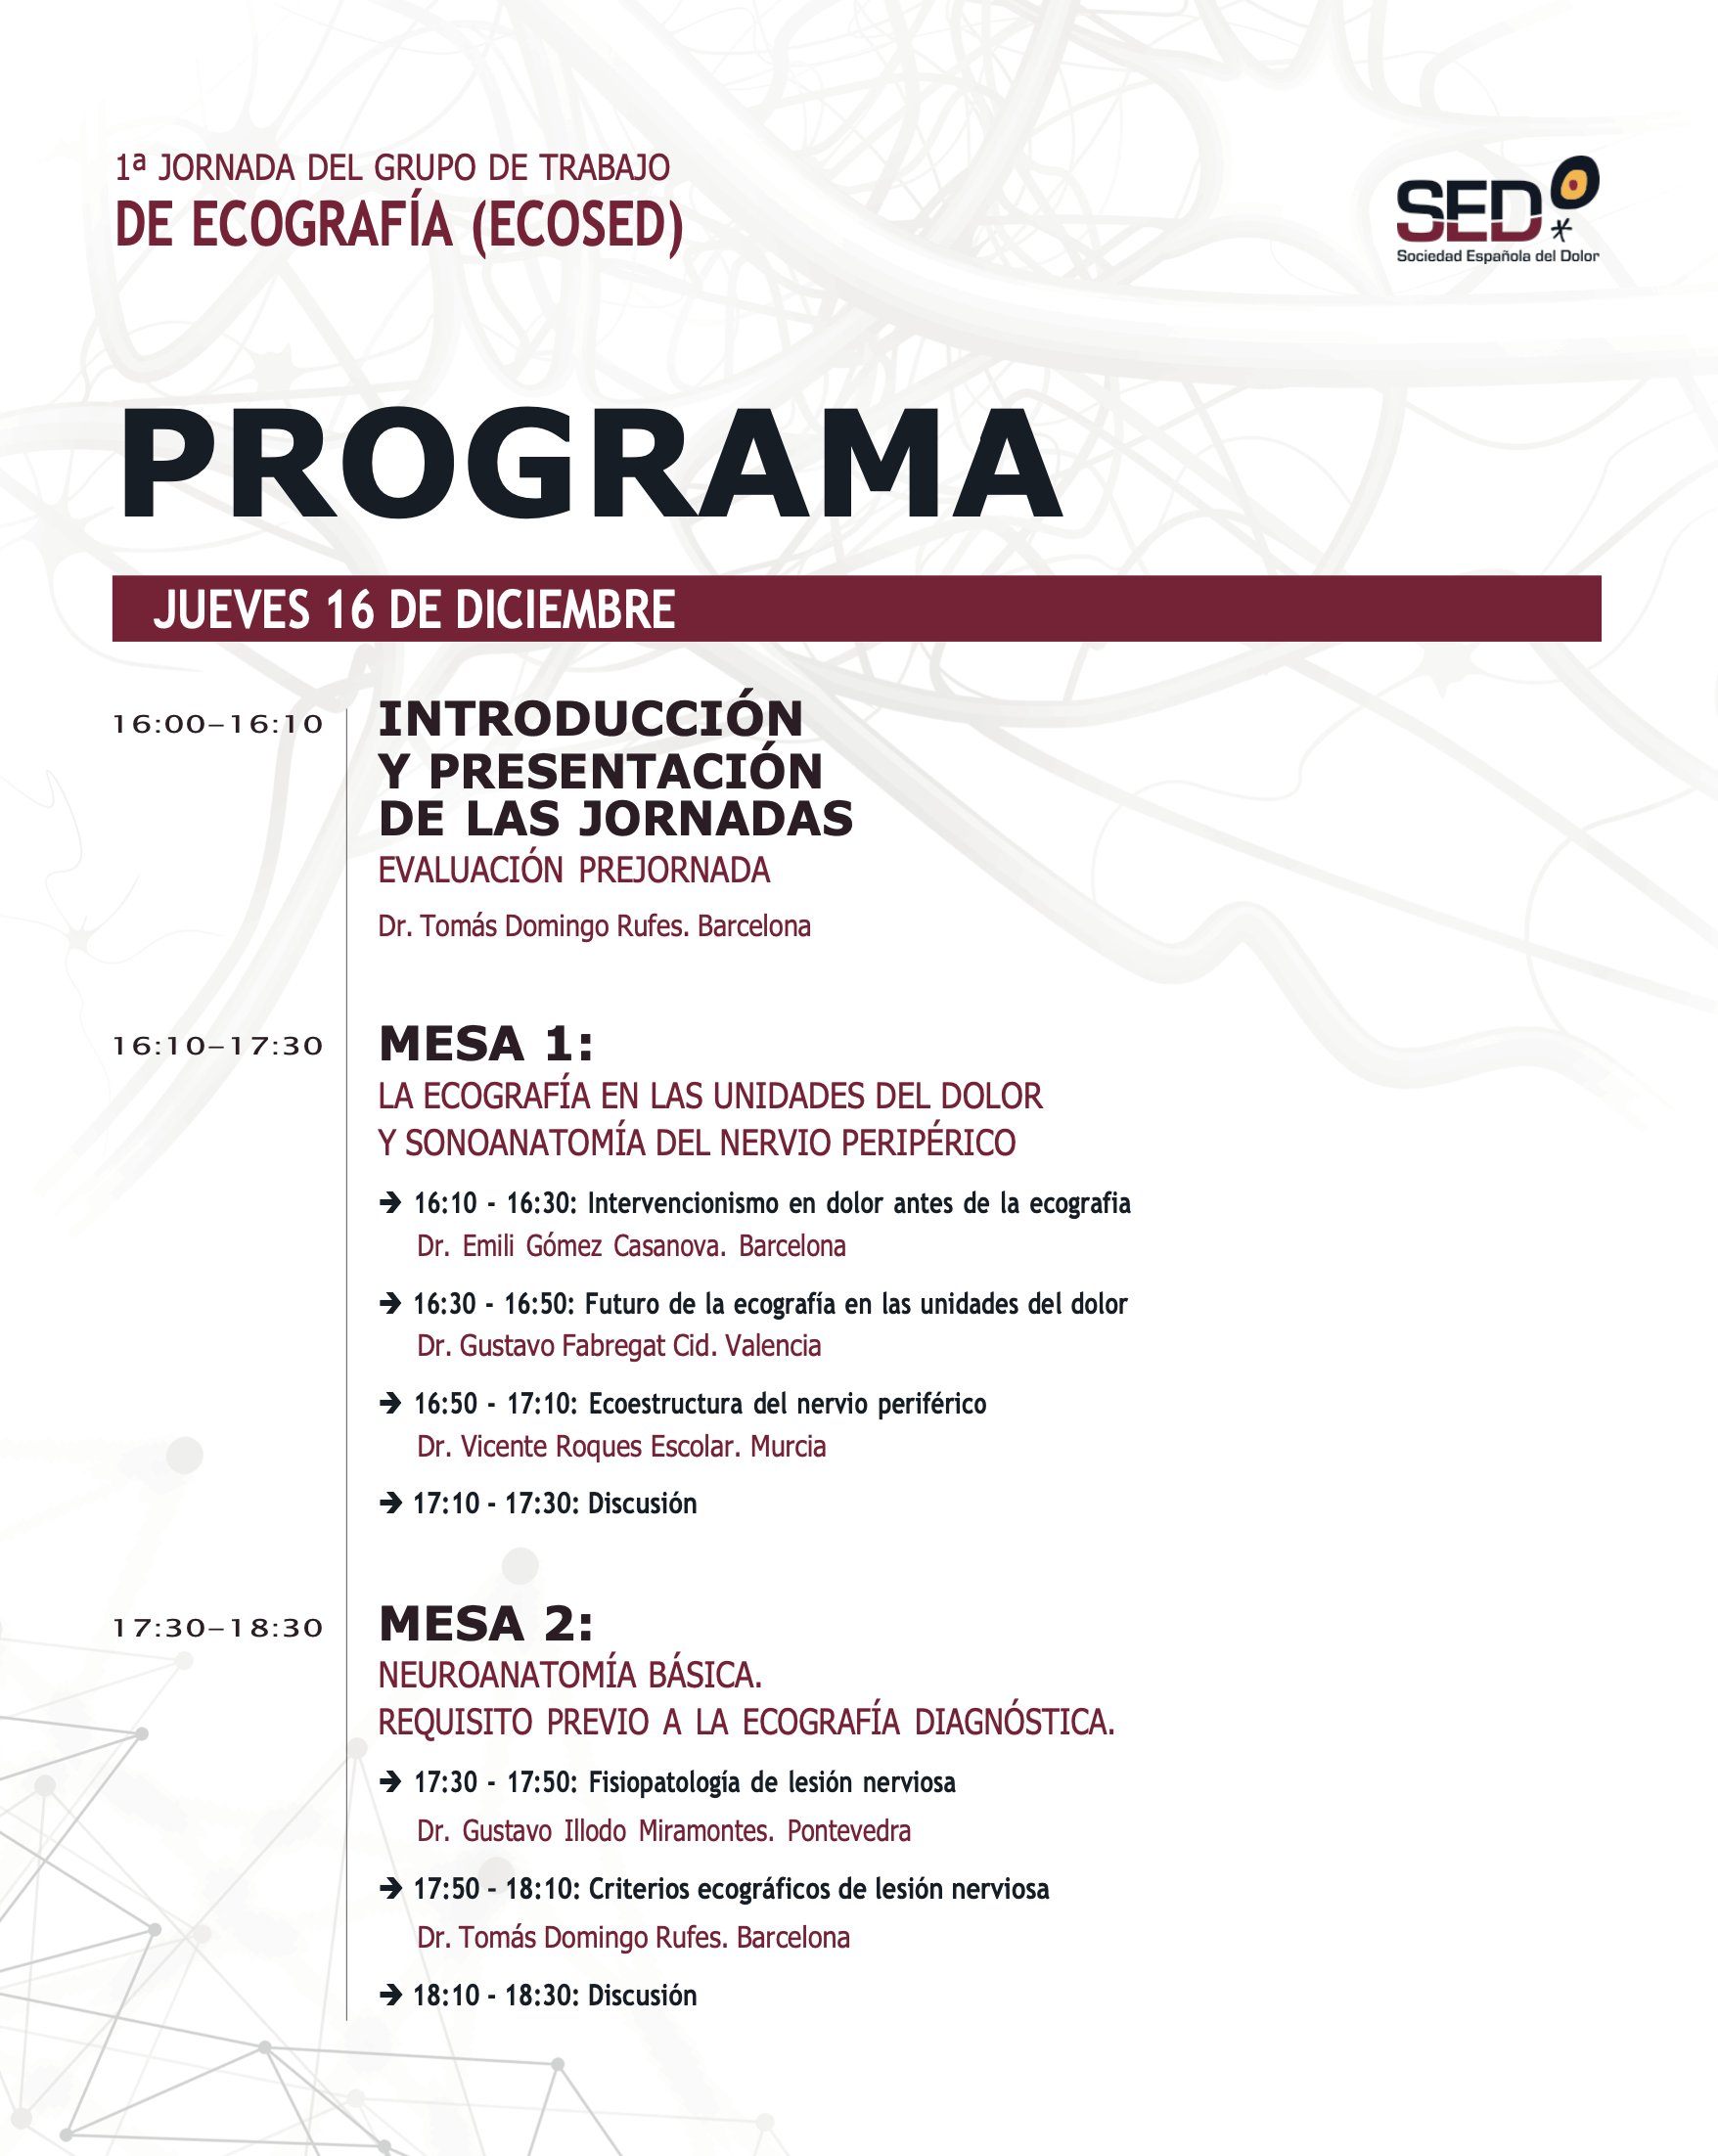 Sociedad Española del Dolor #SEDValencia22 on Twitter: "Este es el programa de la 1ª Jornada del Grupo de Trabajo de Ecografía la que se celebra mañana día 16 formato